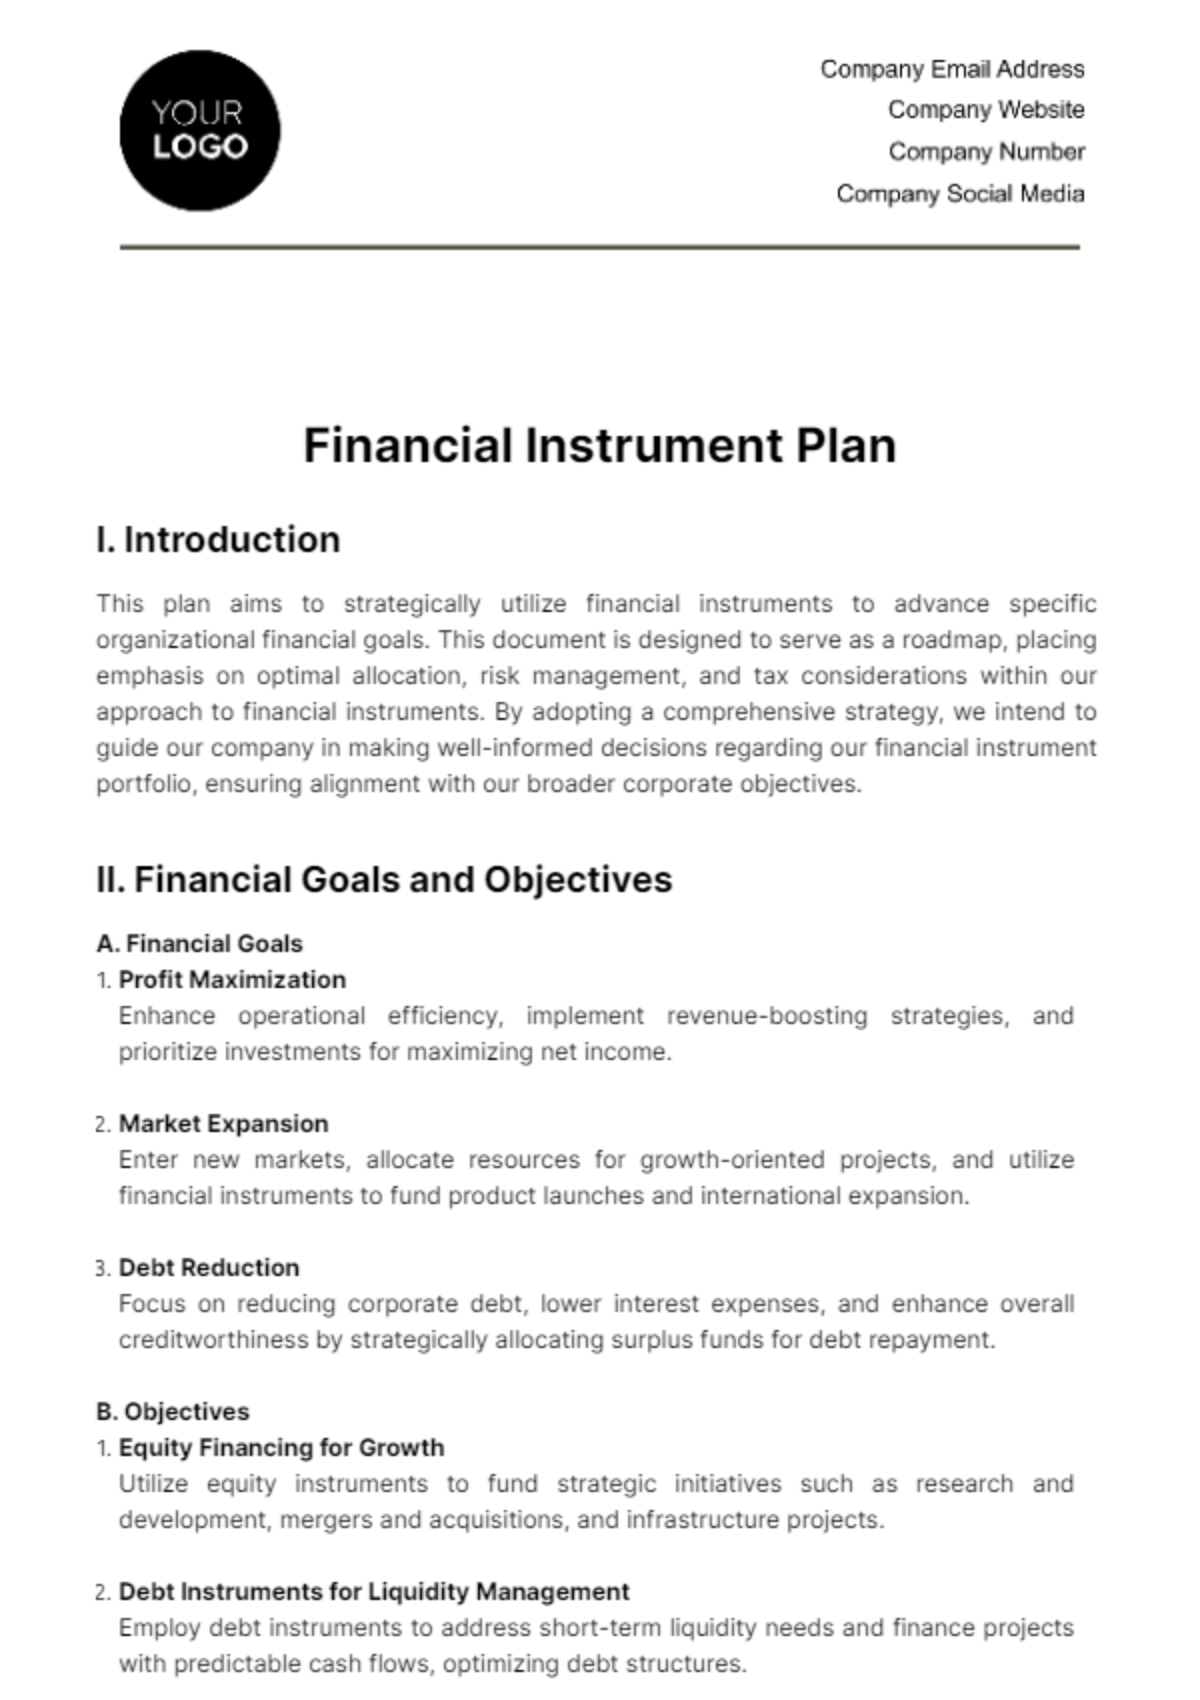 Financial Instrument Plan Template